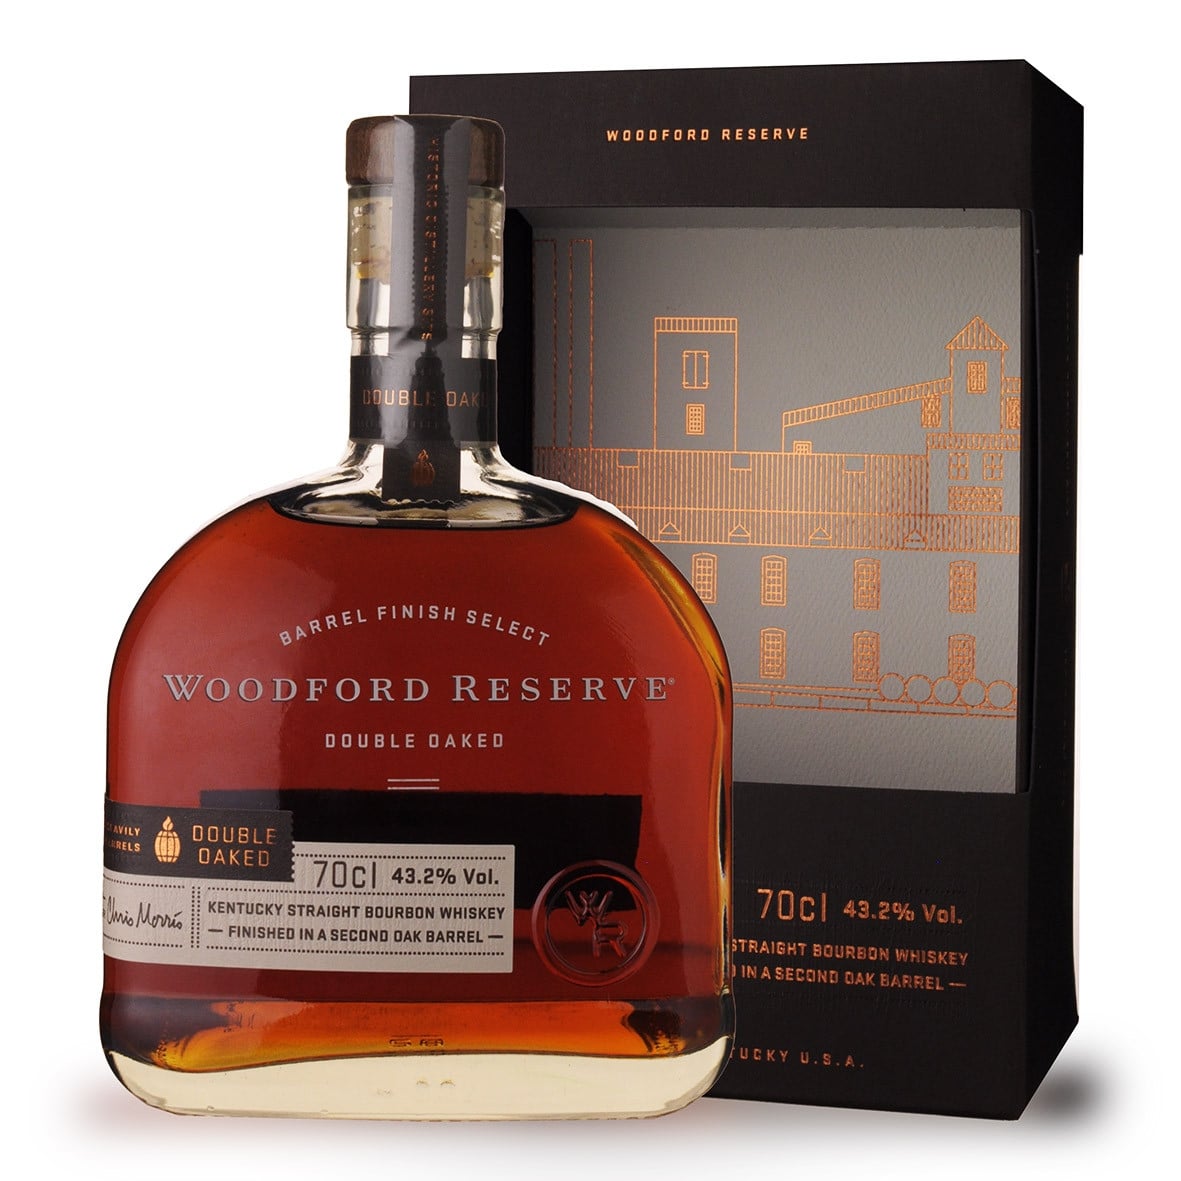 Achat de Whisky Woodford Reserve Double Oaked 70cl vendu en Etui sur ...